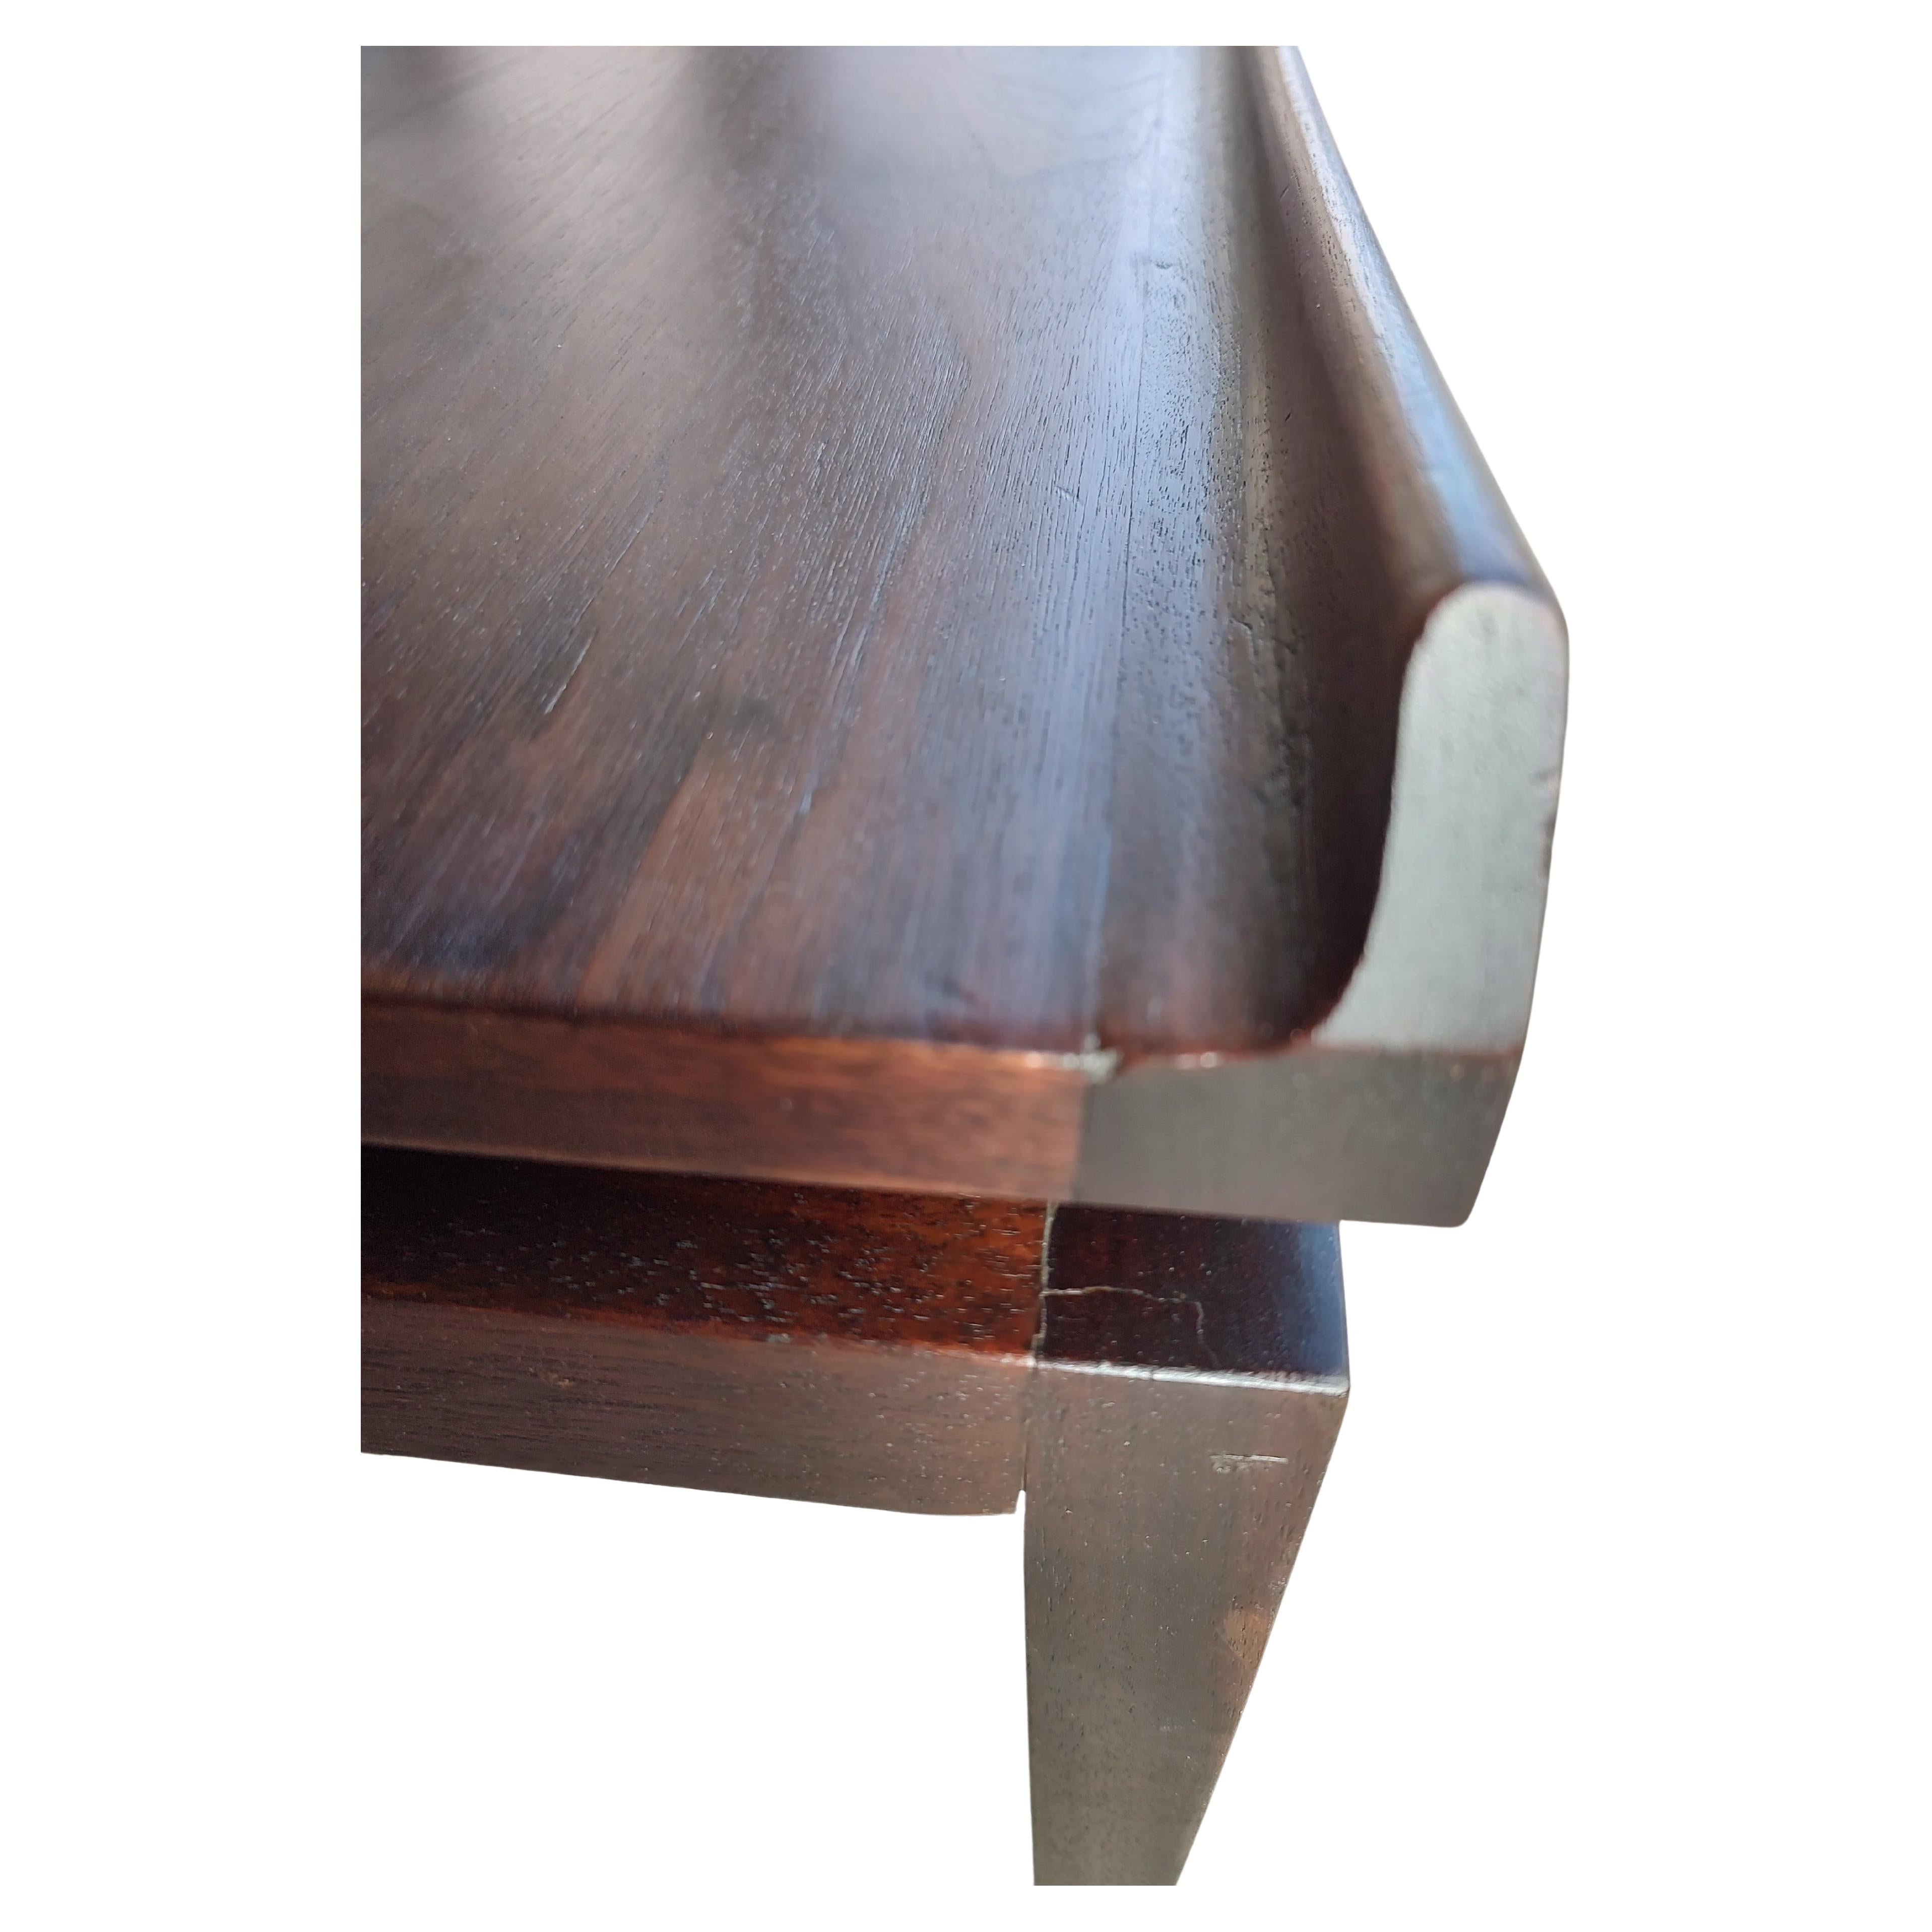 Paar elegante und elegante Nussbaumholz-End-/Cocktailtische von Jens Risom, (verfügbar und einzeln erhältlich), Paar. Die Oberseiten scheinen schwebend zu sein, und die skulpturalen Ränder sind Teil des Risom-Designs. Die Tische wurden aufgearbeitet